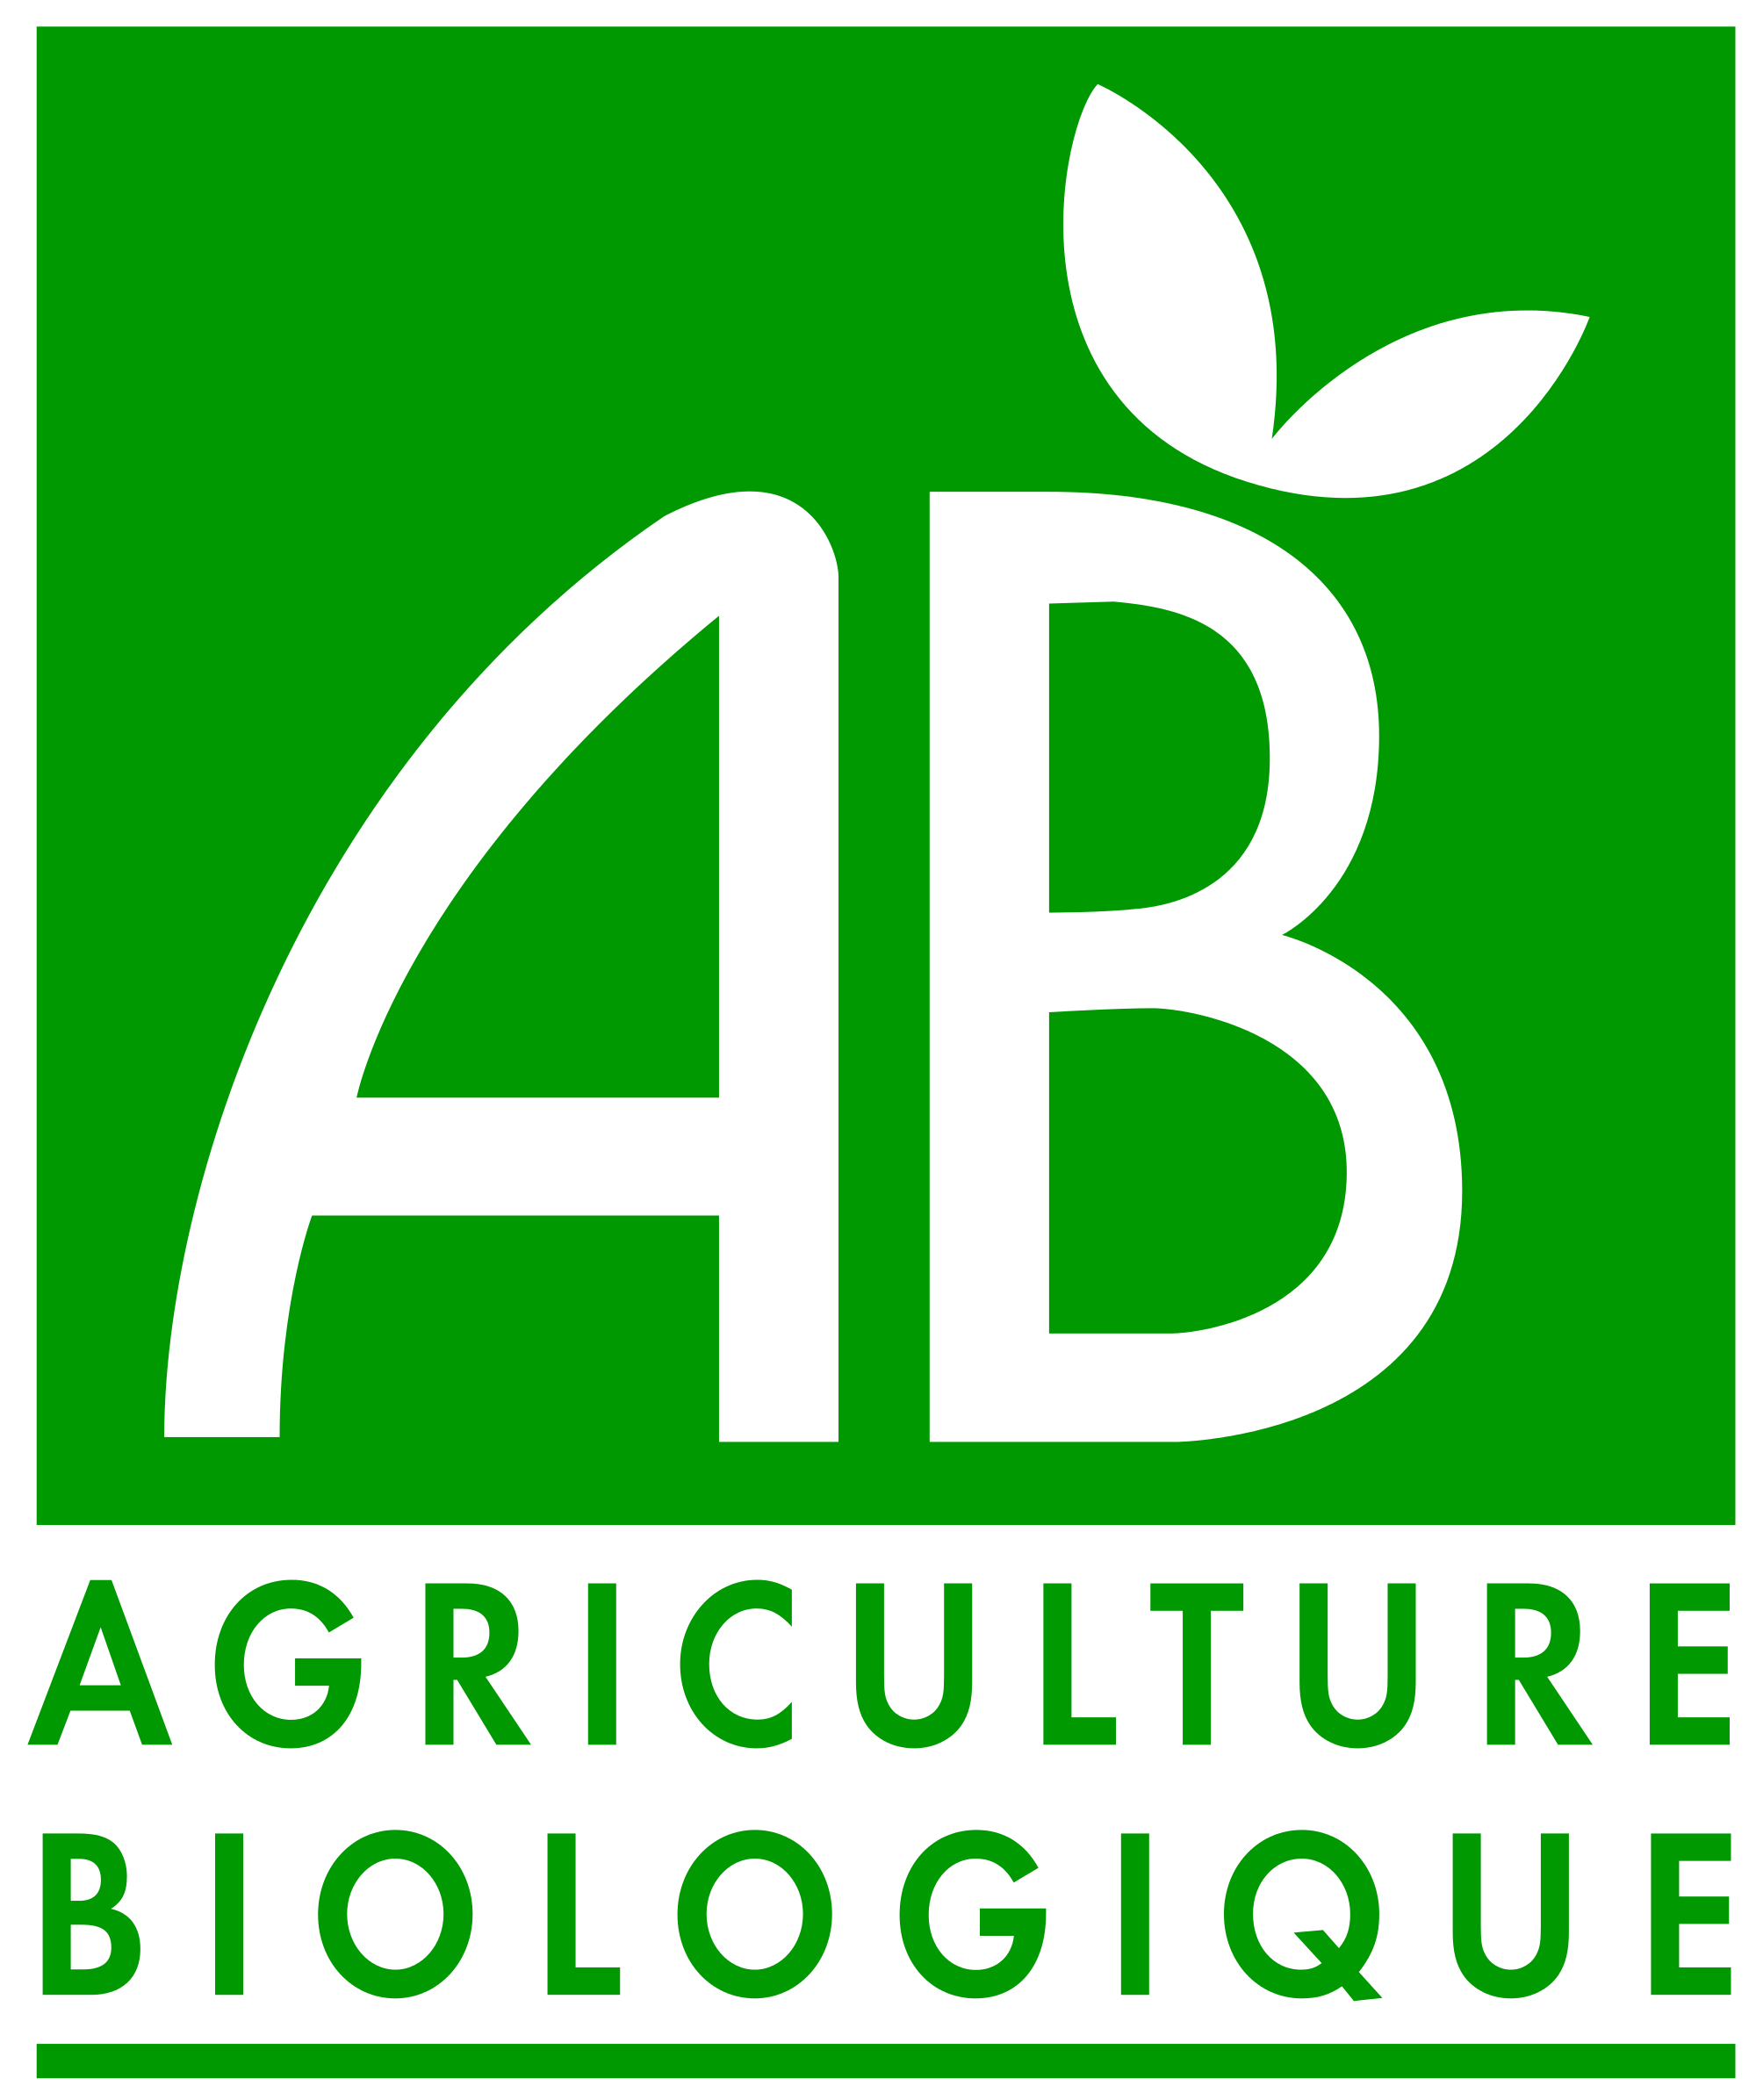 Agriculture biologique logo.png